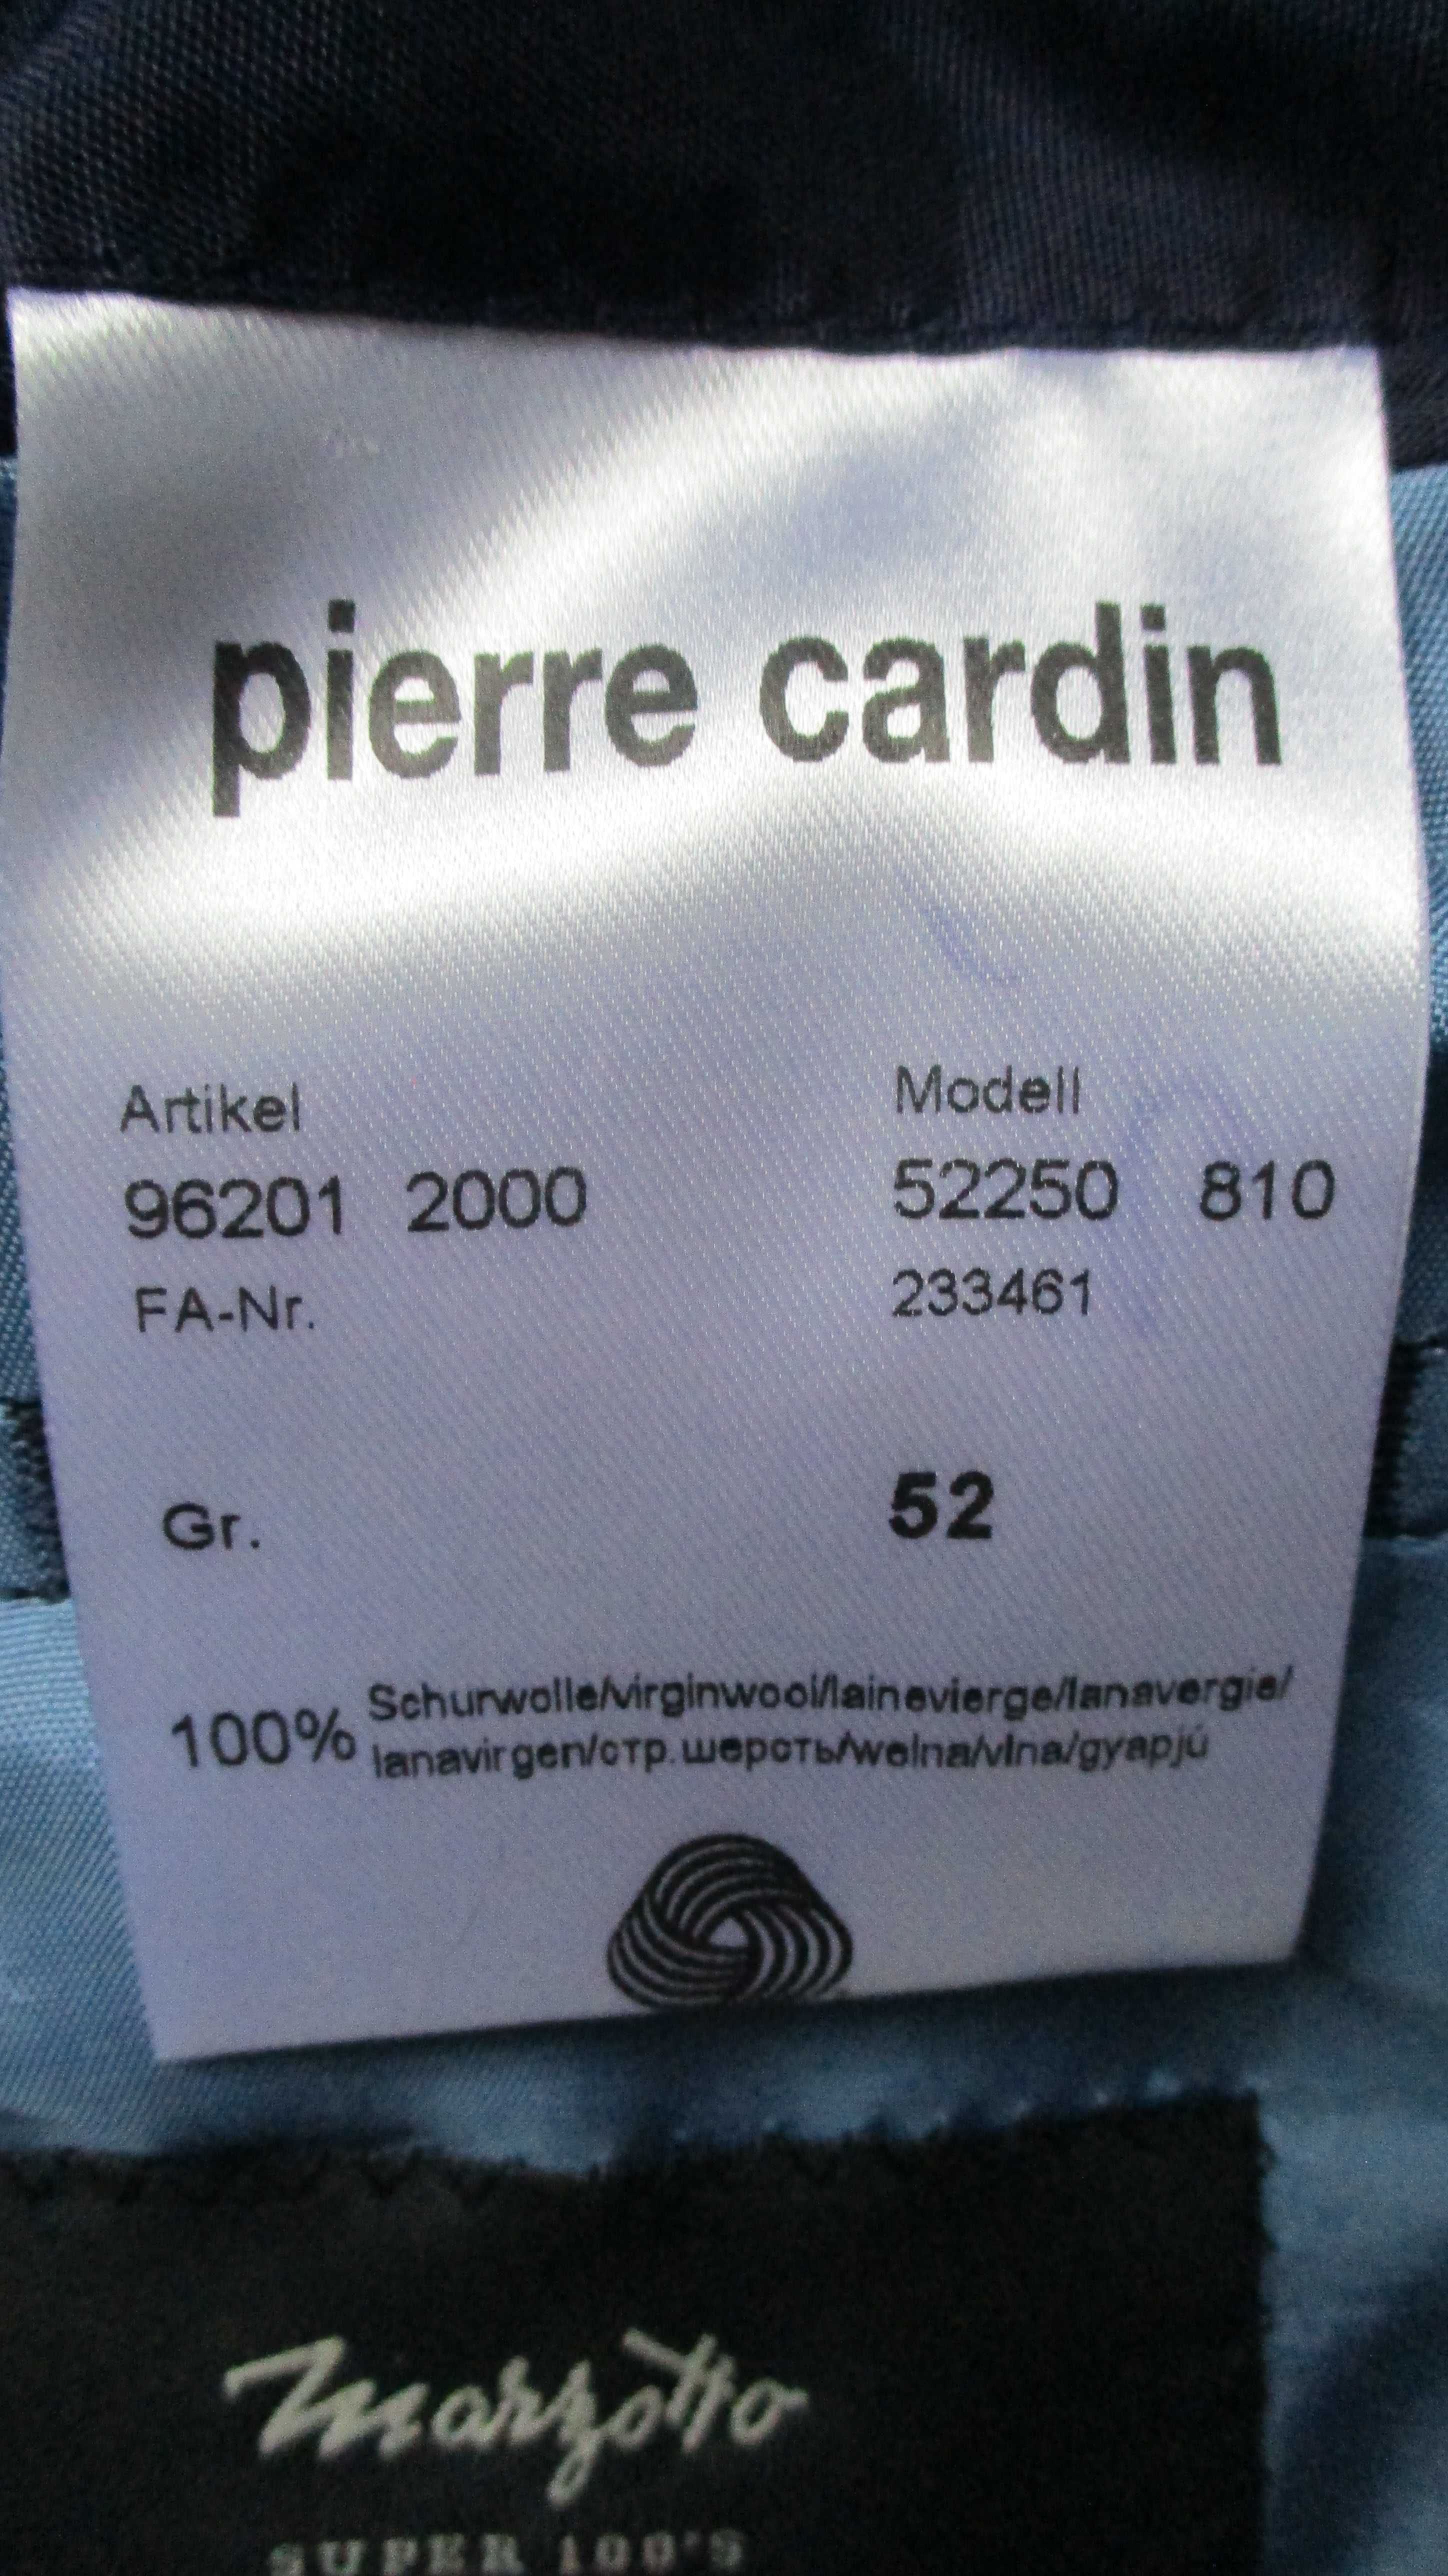 Marynarka Pierre Cardin model 52250- stan idealny R.52